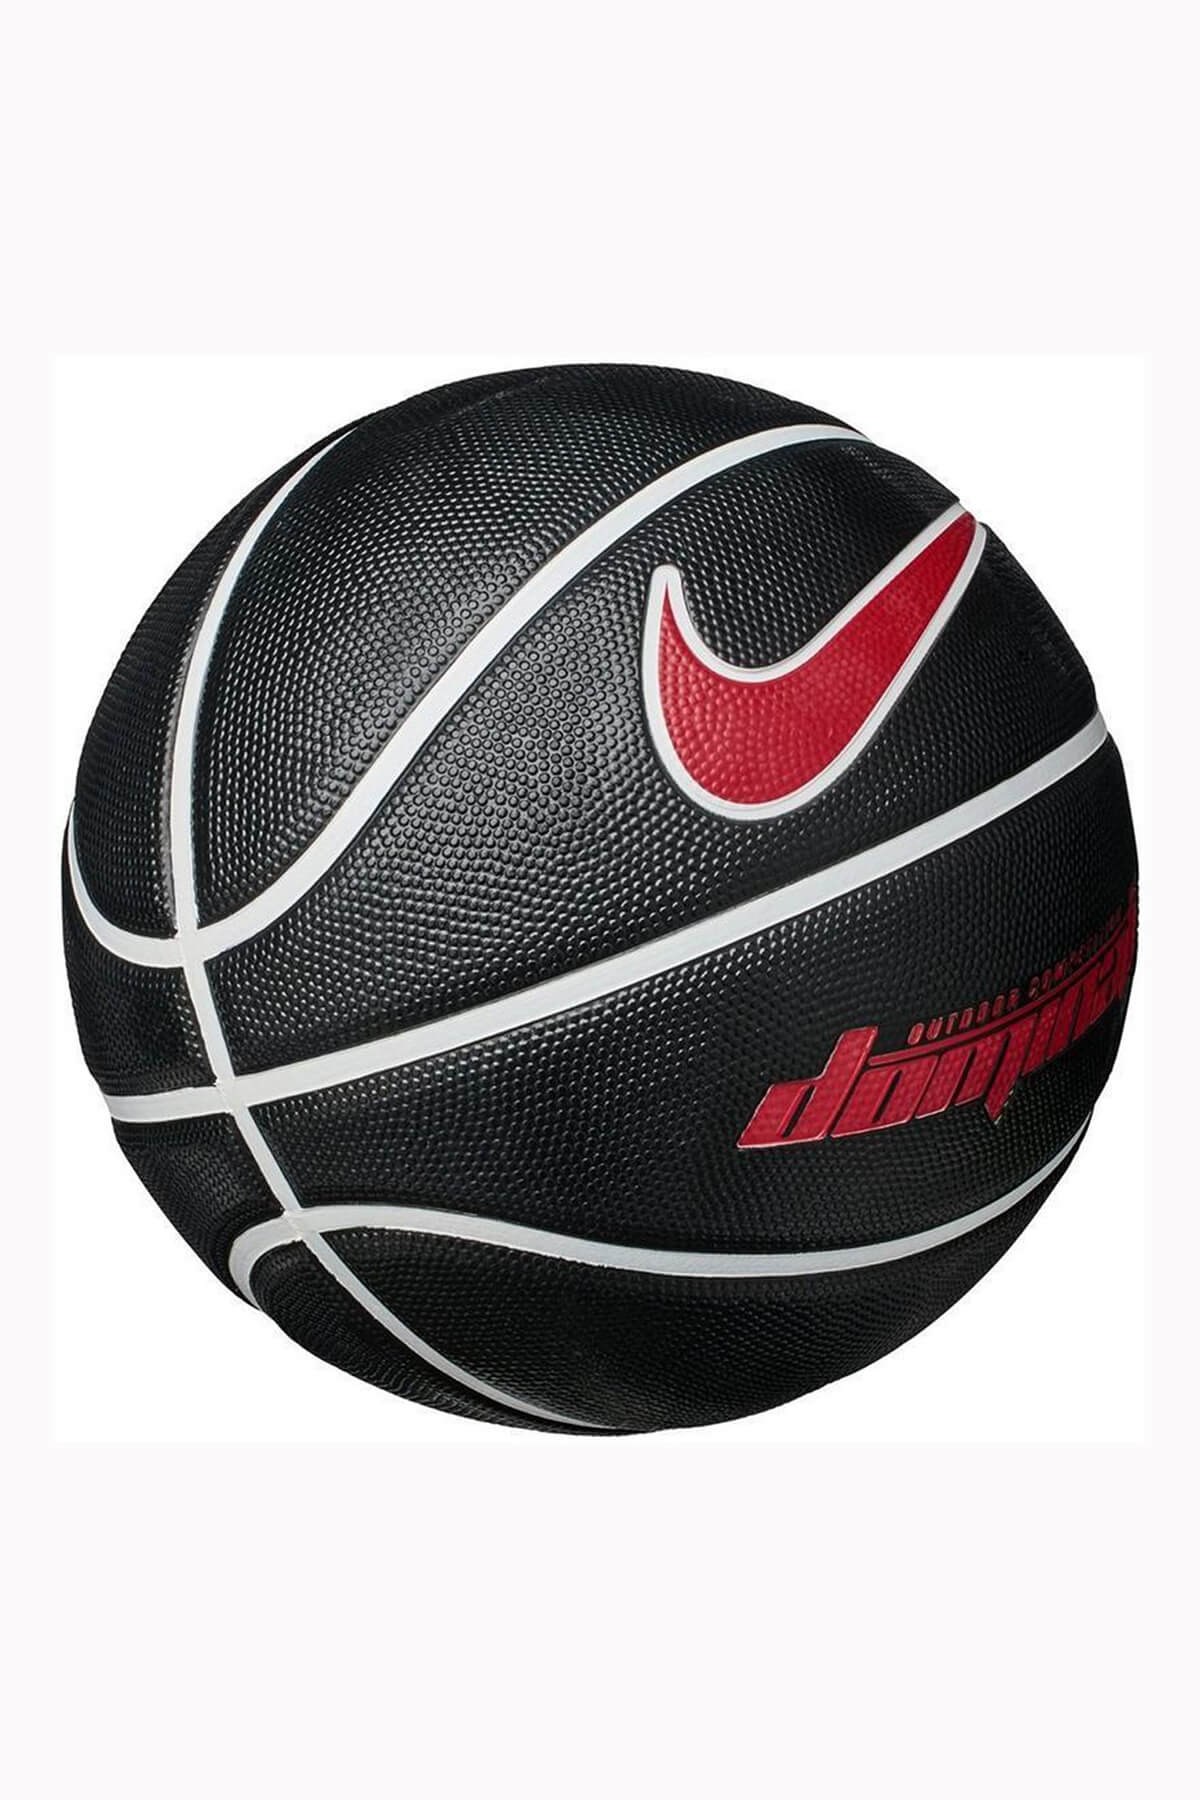 Basketbol Topları | Nike Dominate Siyah Kırmızı Basketbol Topu No:7 Fiyat  ve Özellikleri